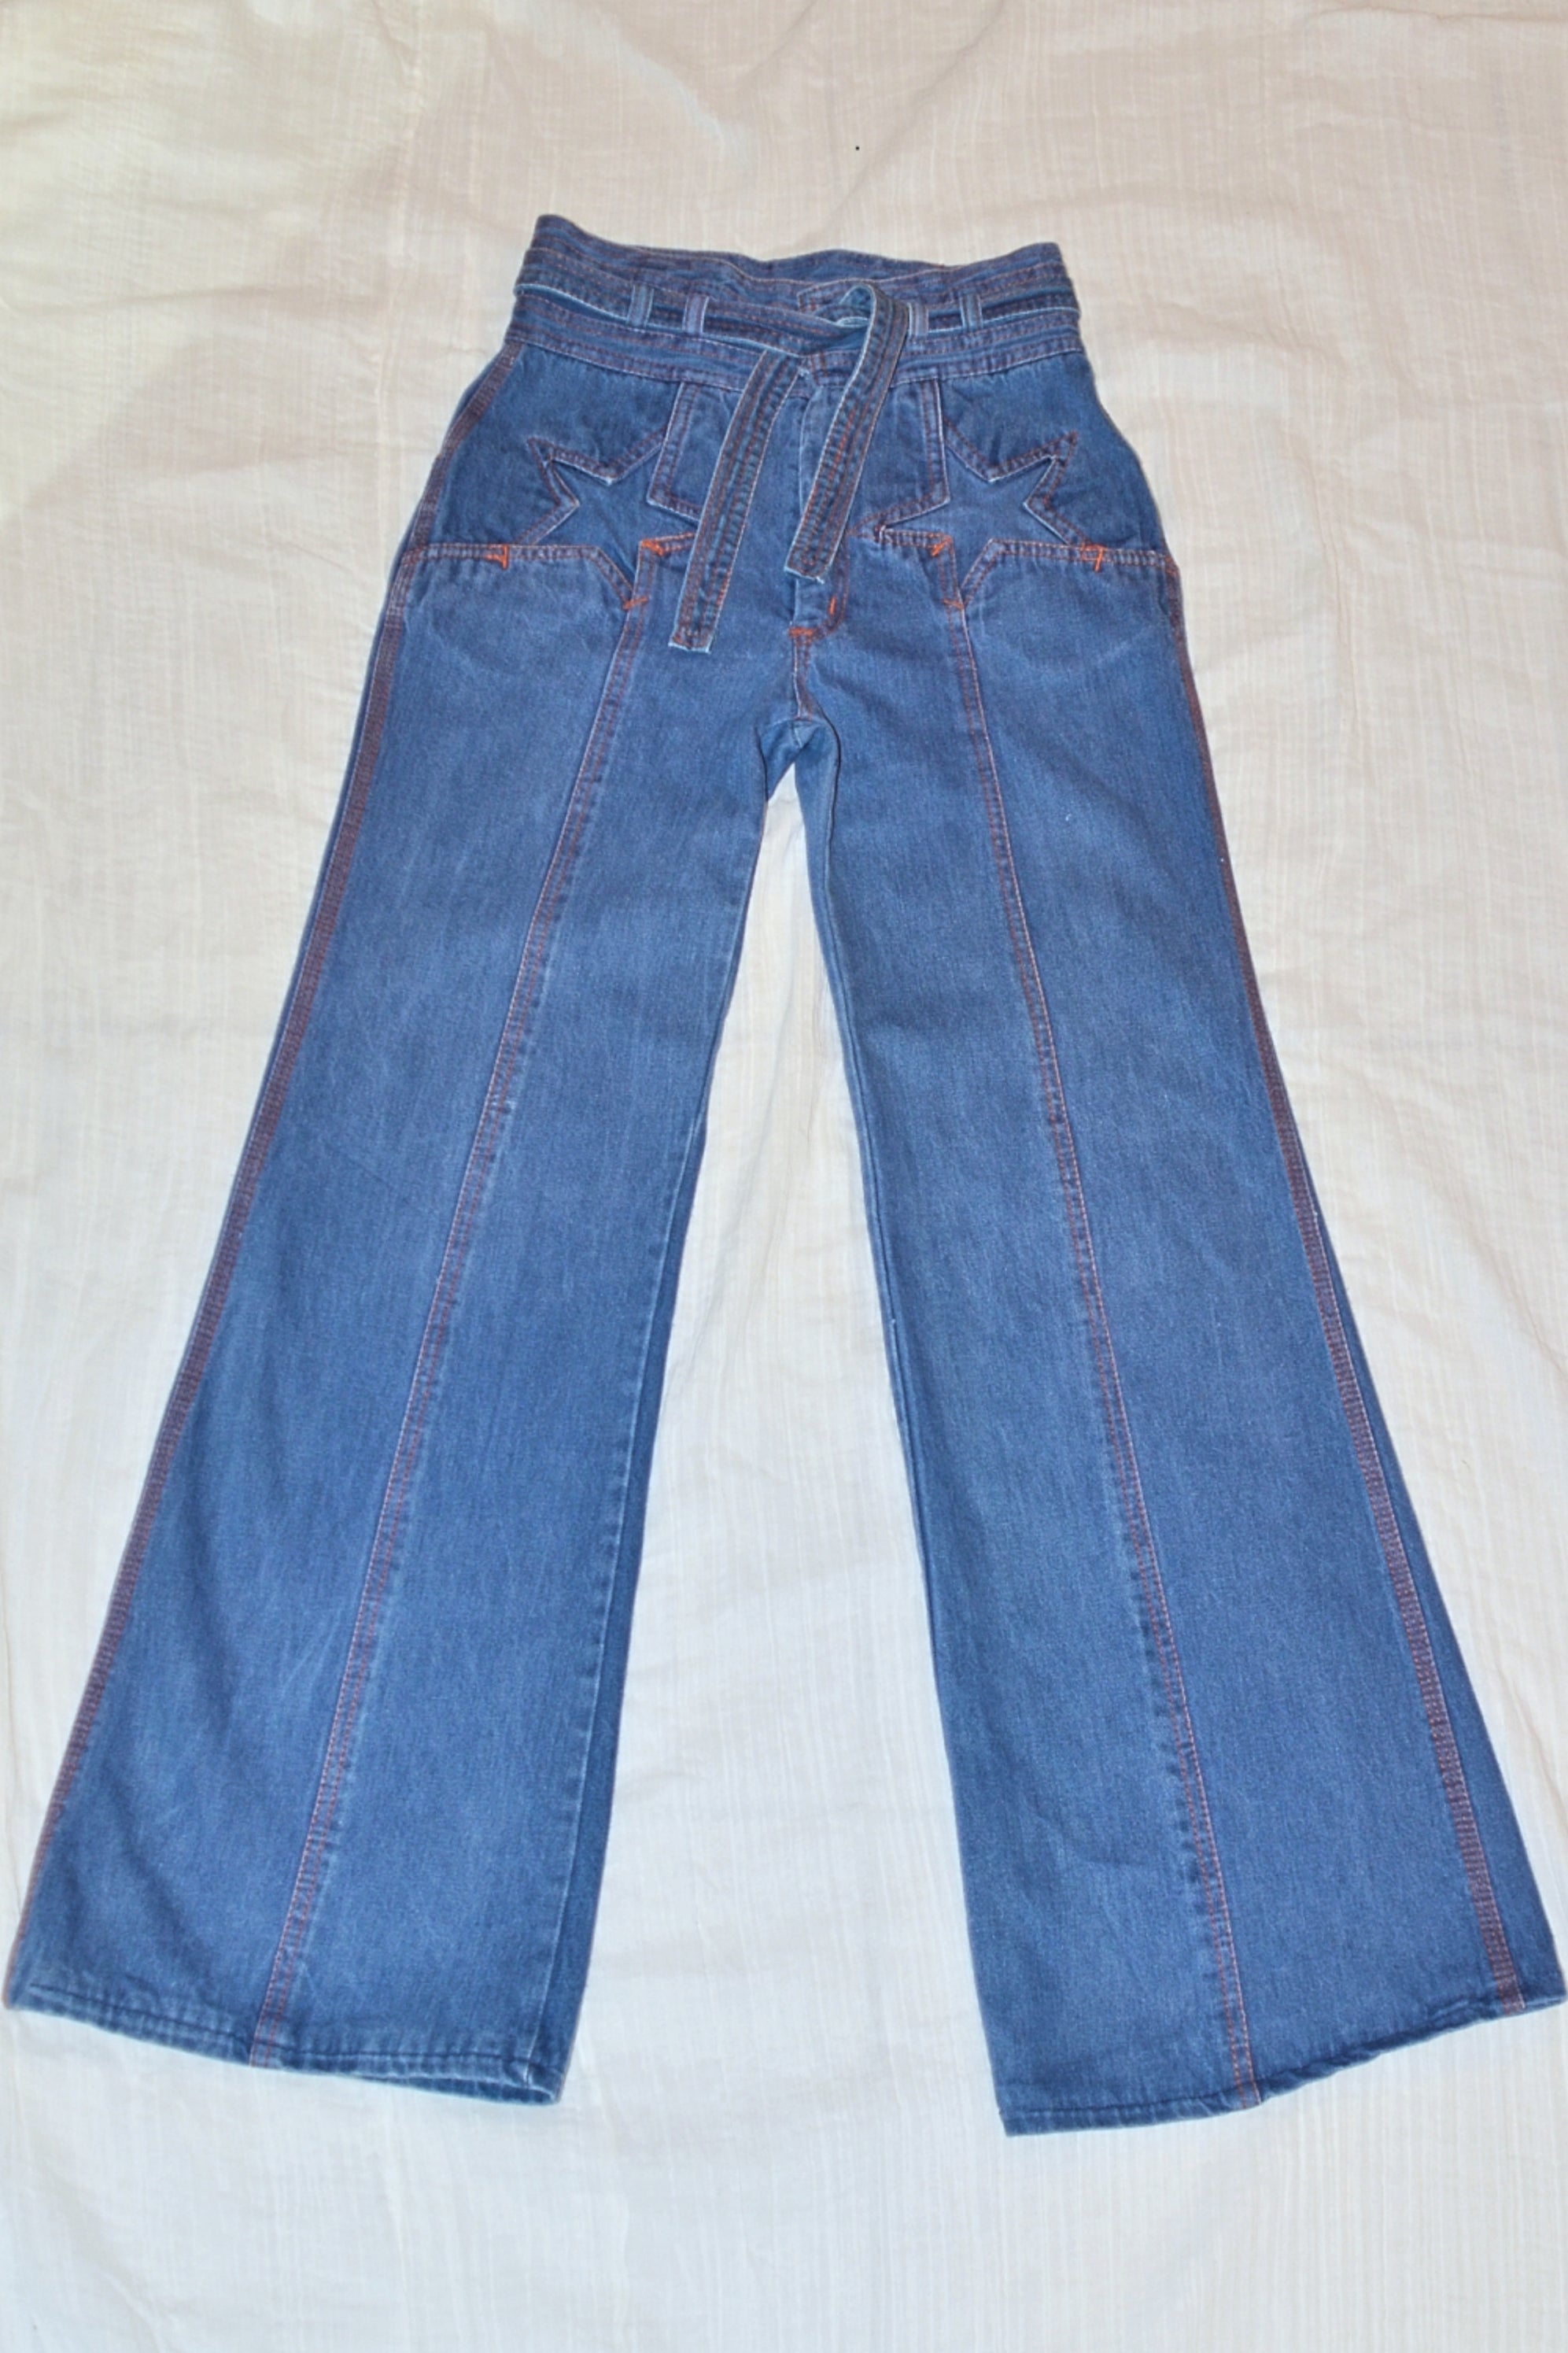 SOLD RARE Vintage 70s N'est Ce Pas? Star Jeans, High Waist + Belt, Bel ...